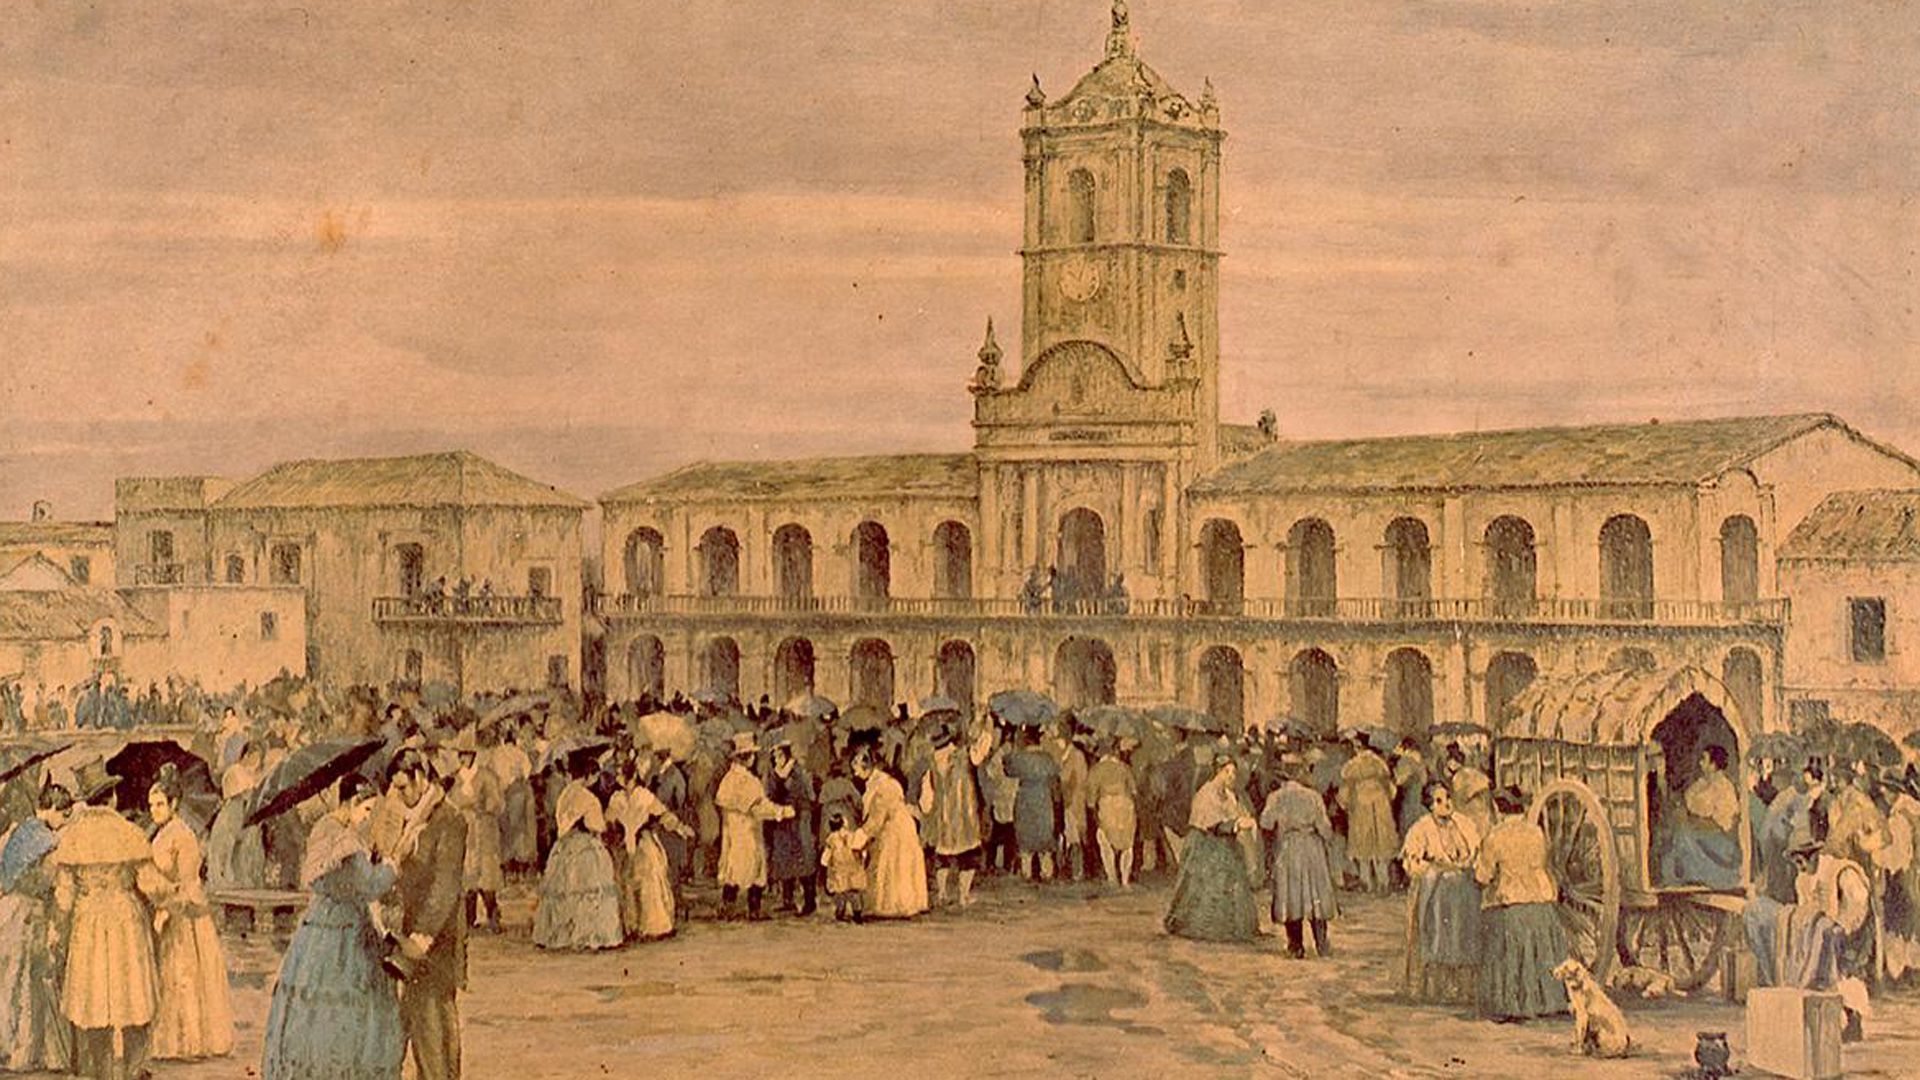 El 25 de mayo de 1810 dio origen a un gobierno autónomo y provisorio para tutelar los derechos del monarca español Fernando VII en el virreinato del Río de la Plata